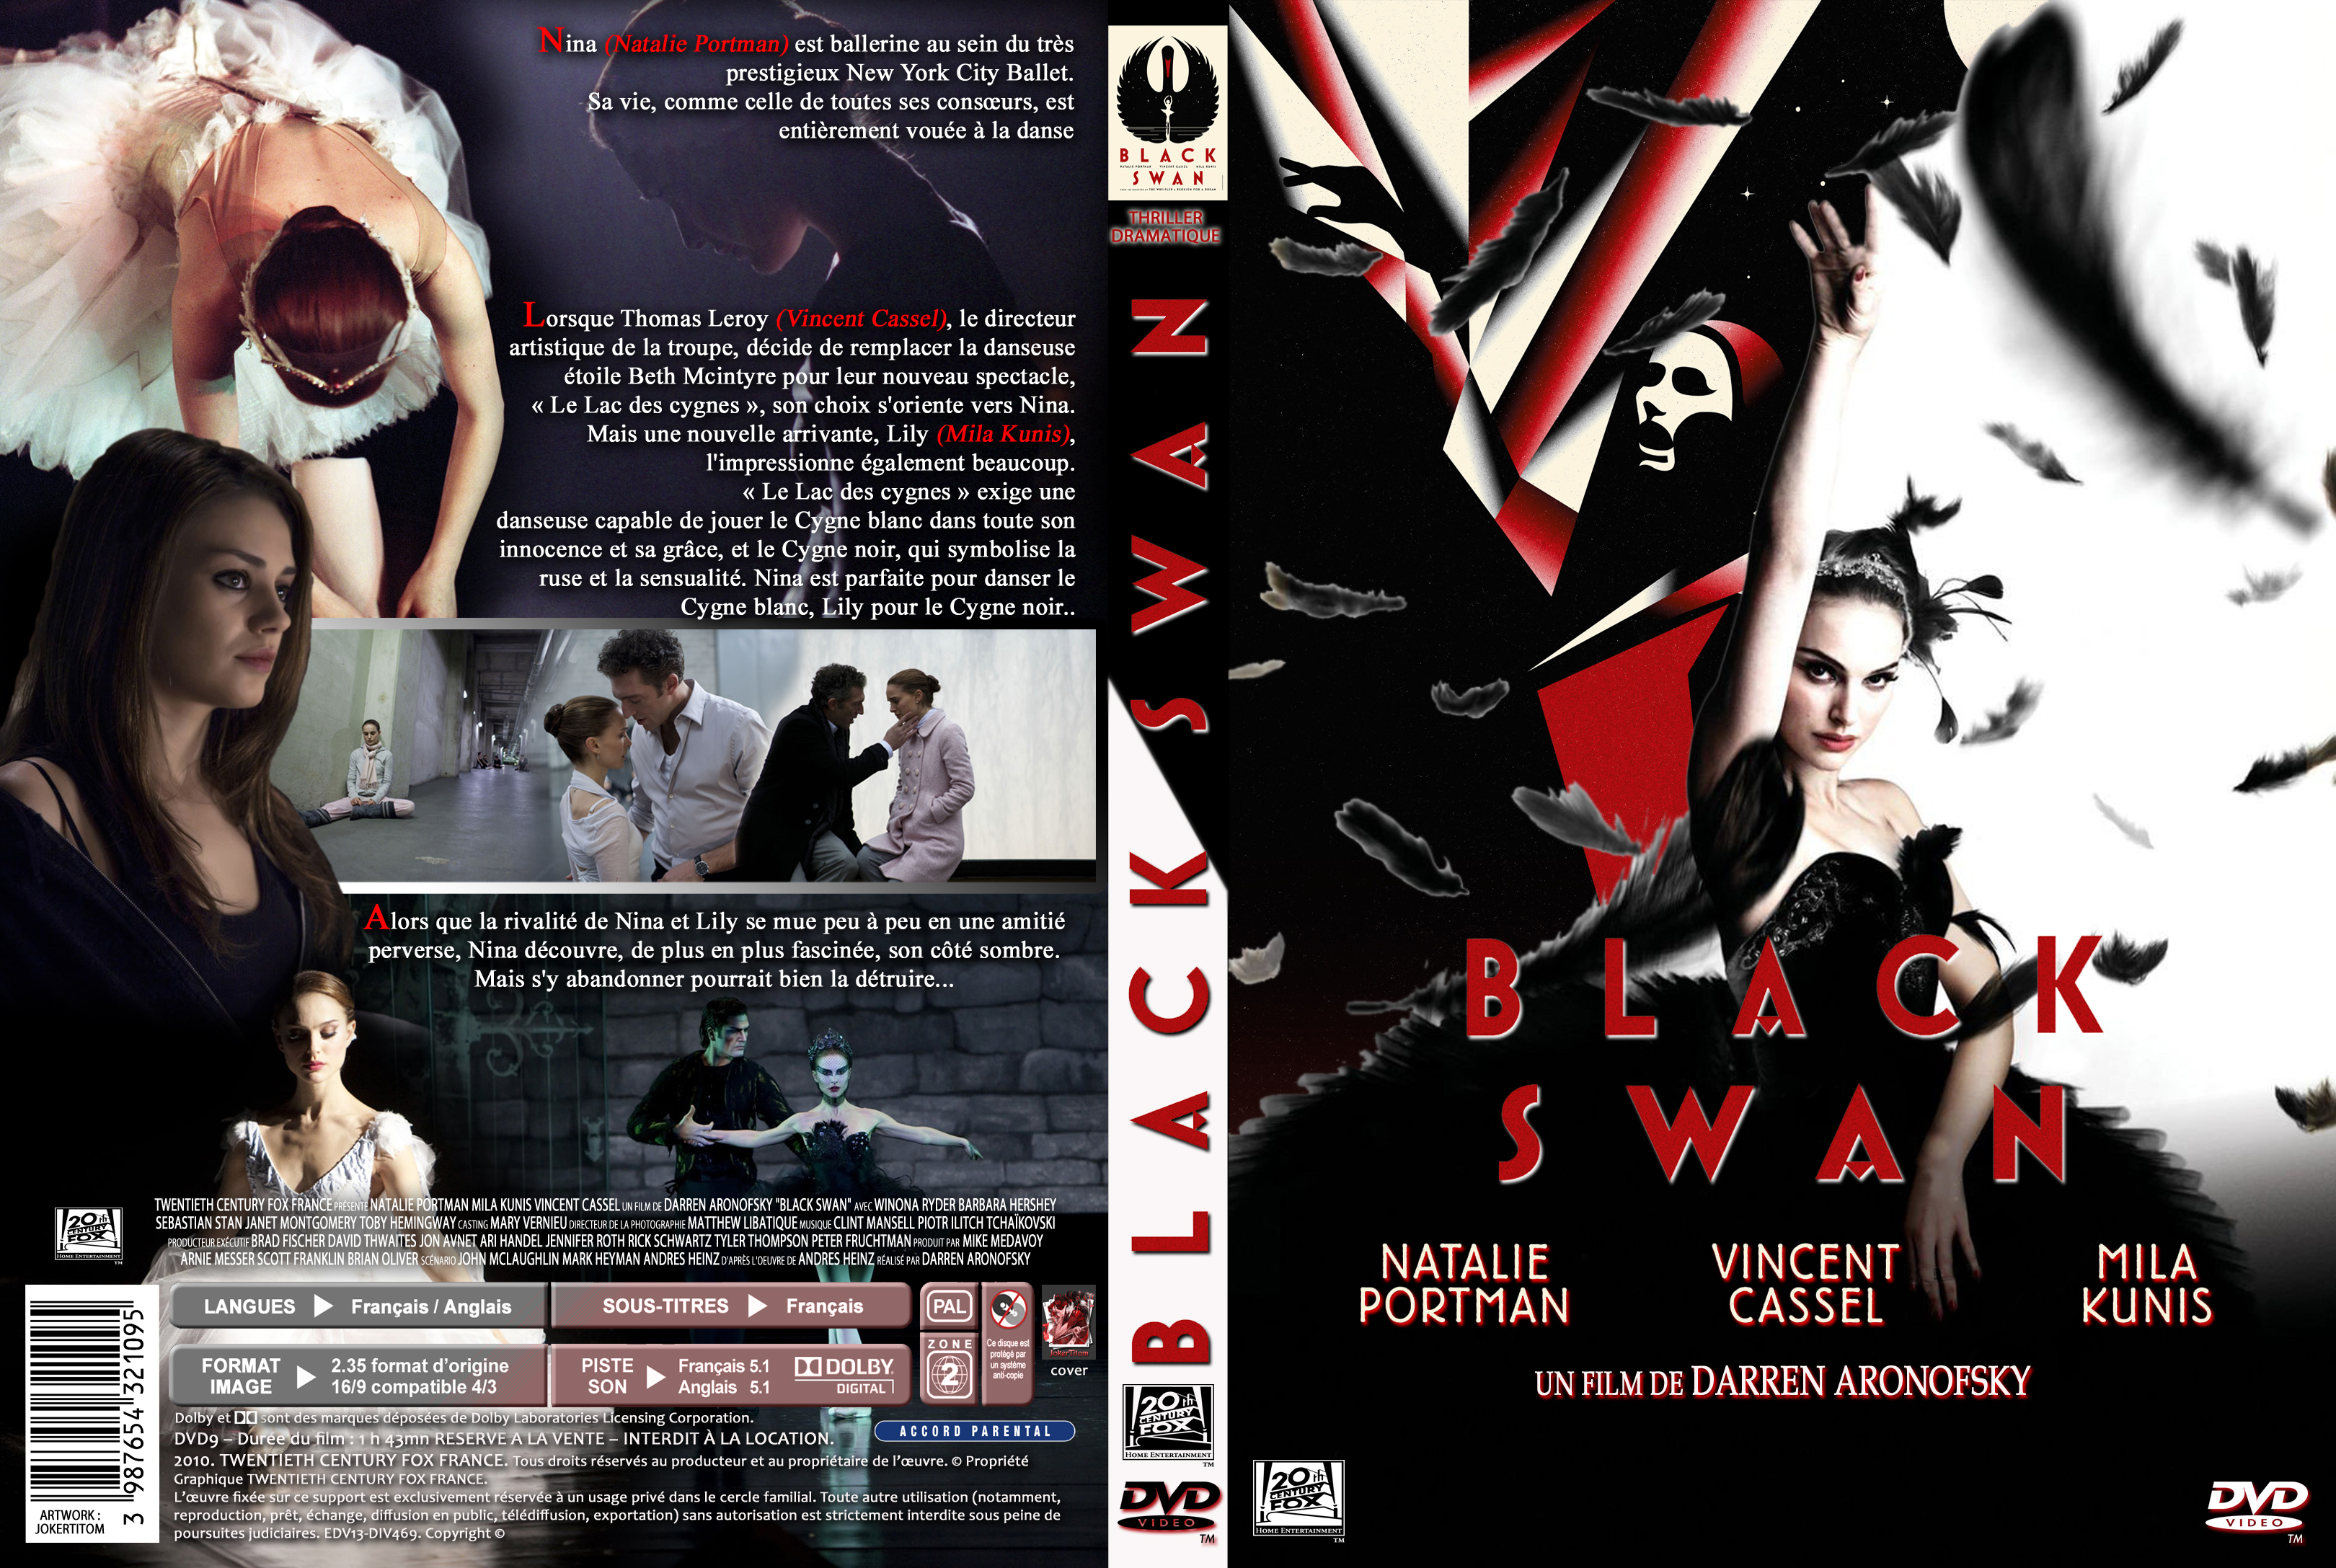 Jaquette DVD Black swan custom v2